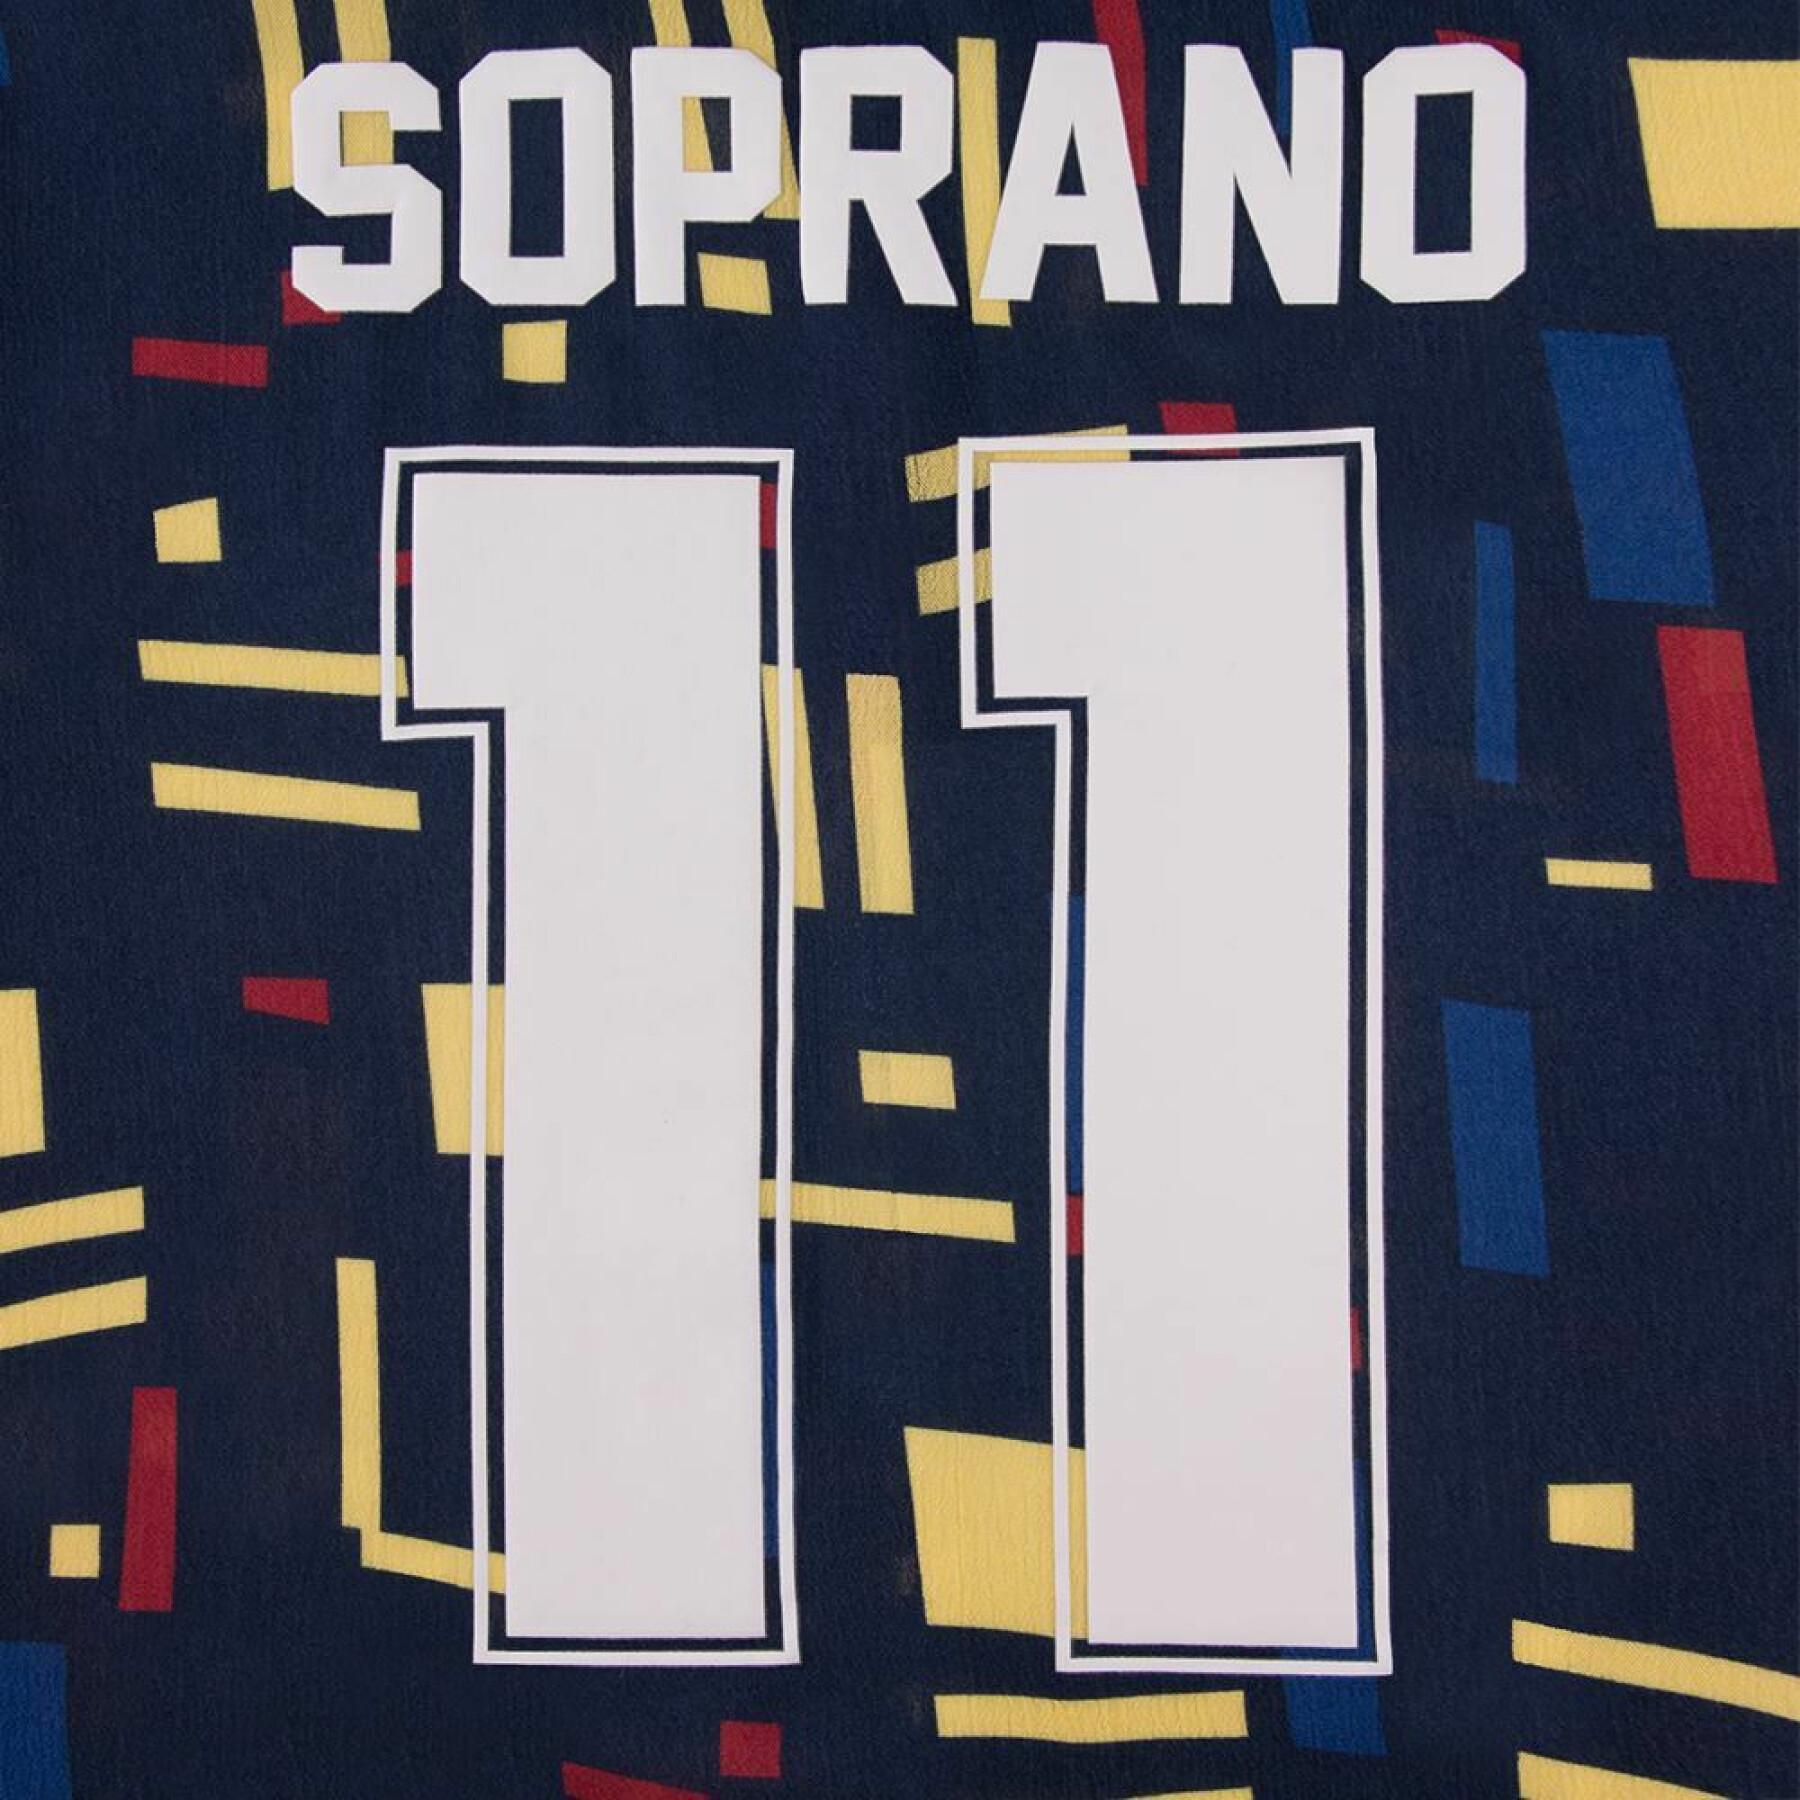 Overhemd Copa Soprano